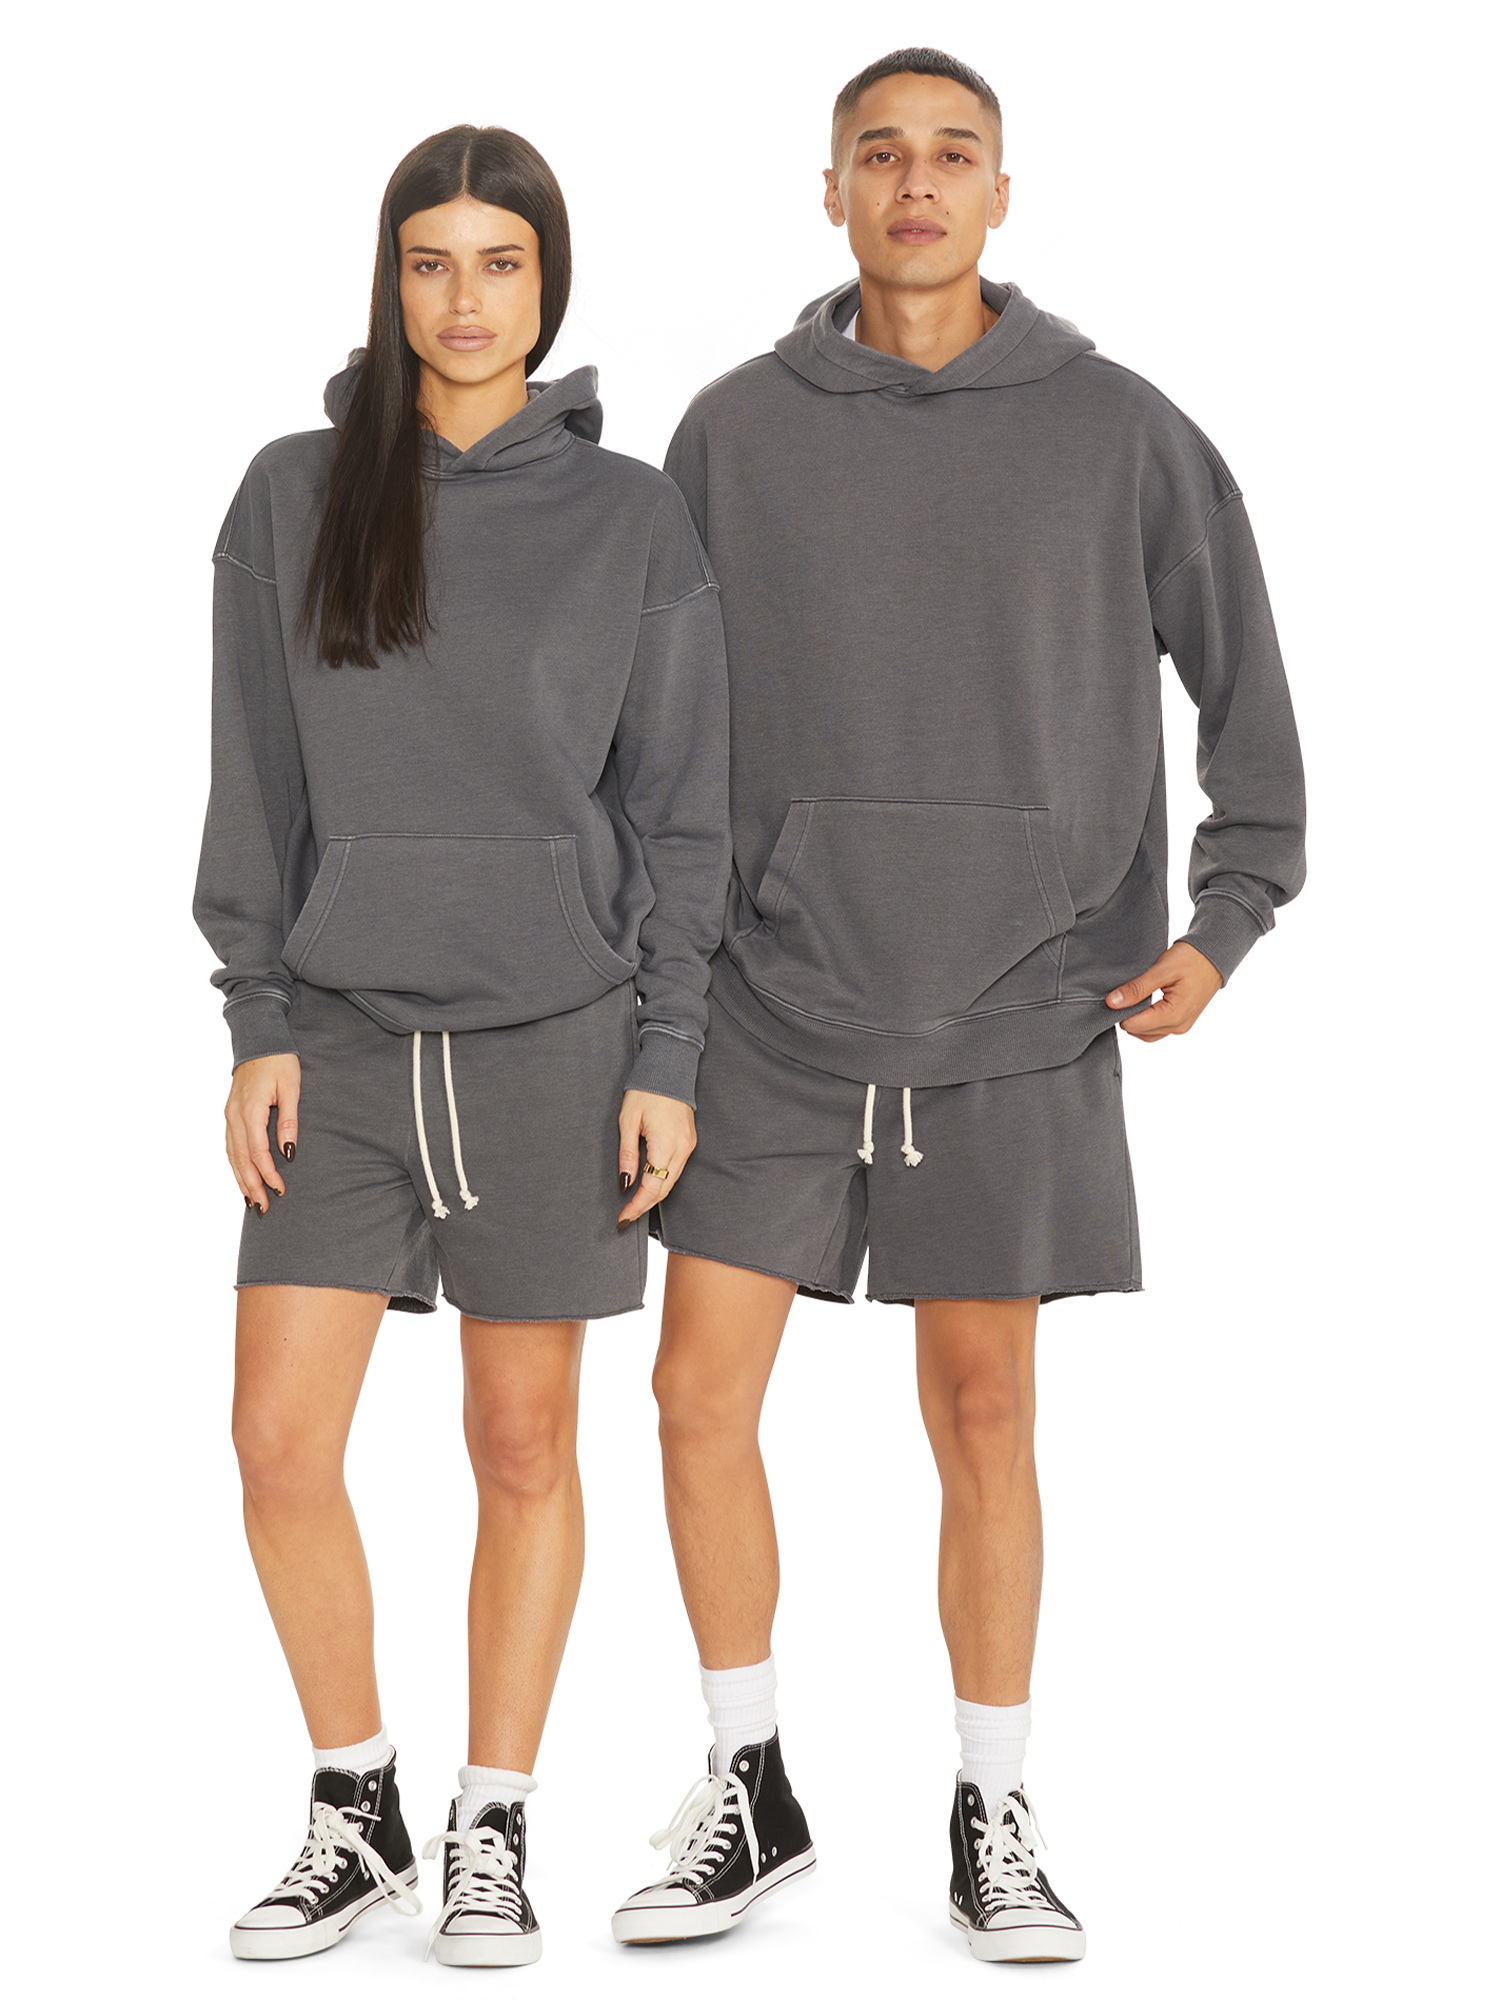 No Boundaries All Gender Fleece Hoodie Sweatshirt, Men's Sizes XS - 5XL - image 2 of 5